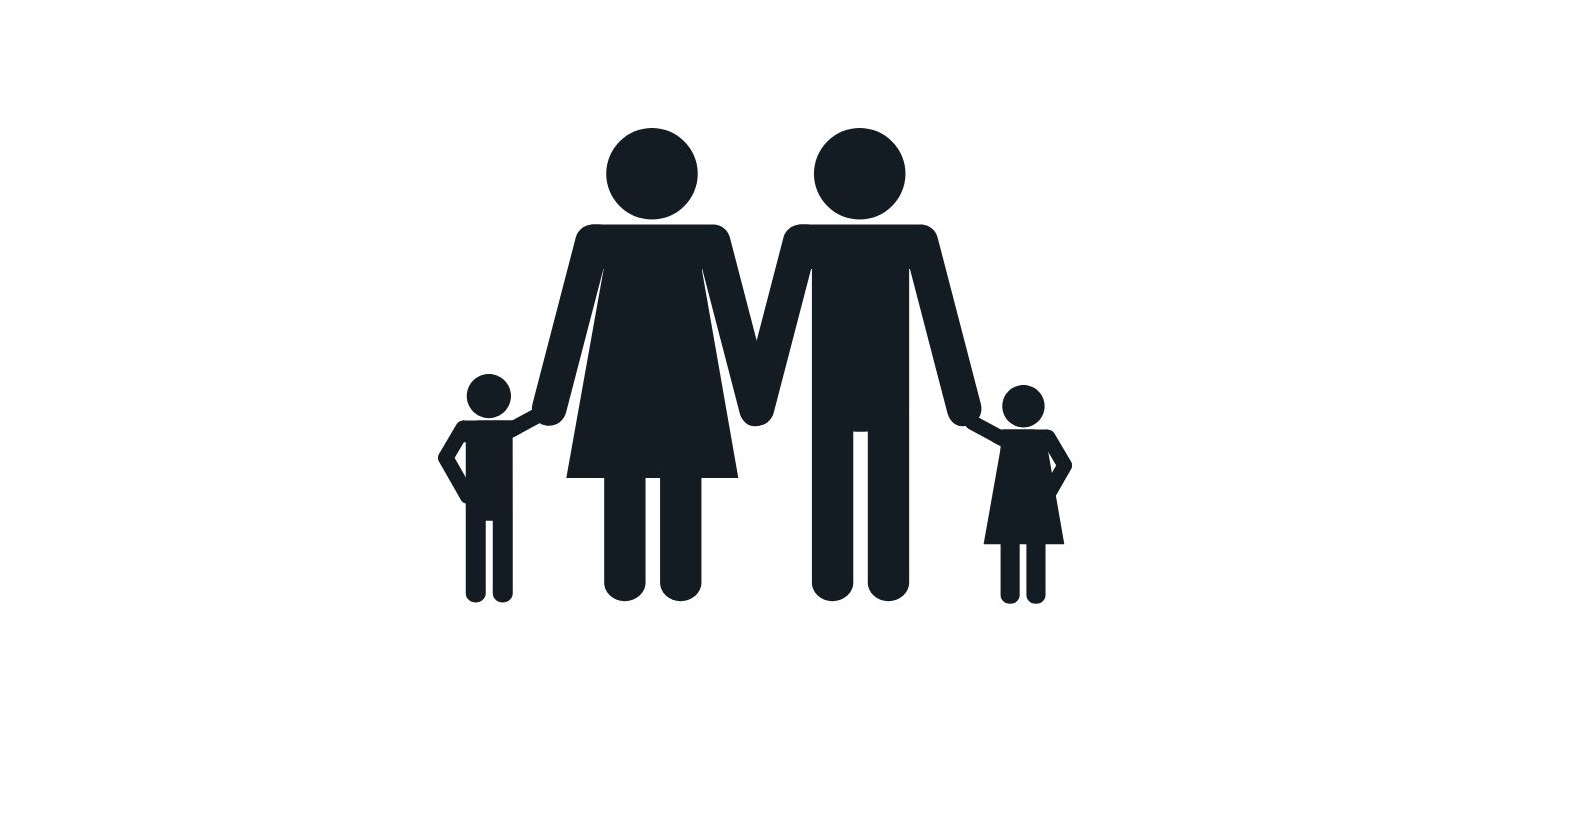 Jednokolorowy rysunek czterech postaci (kobiety, mężczyzny u dwójki dzieci) trzymających się za ręce.